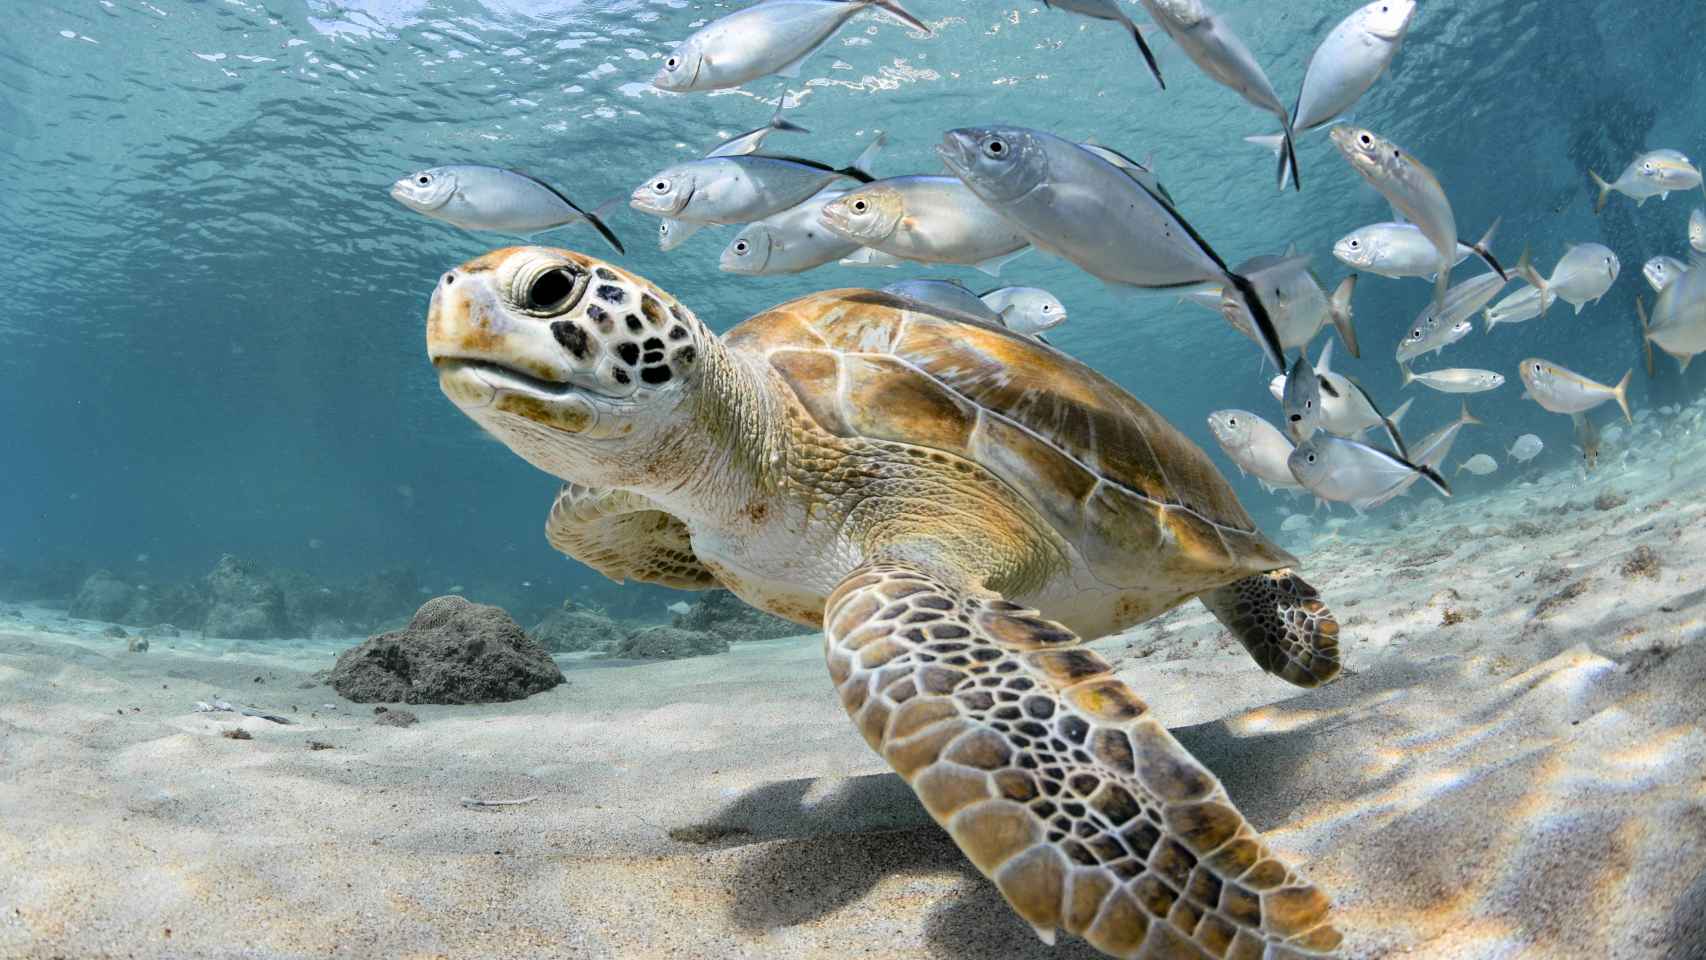 Una tortuga seguida de un banco de peces en el océano.